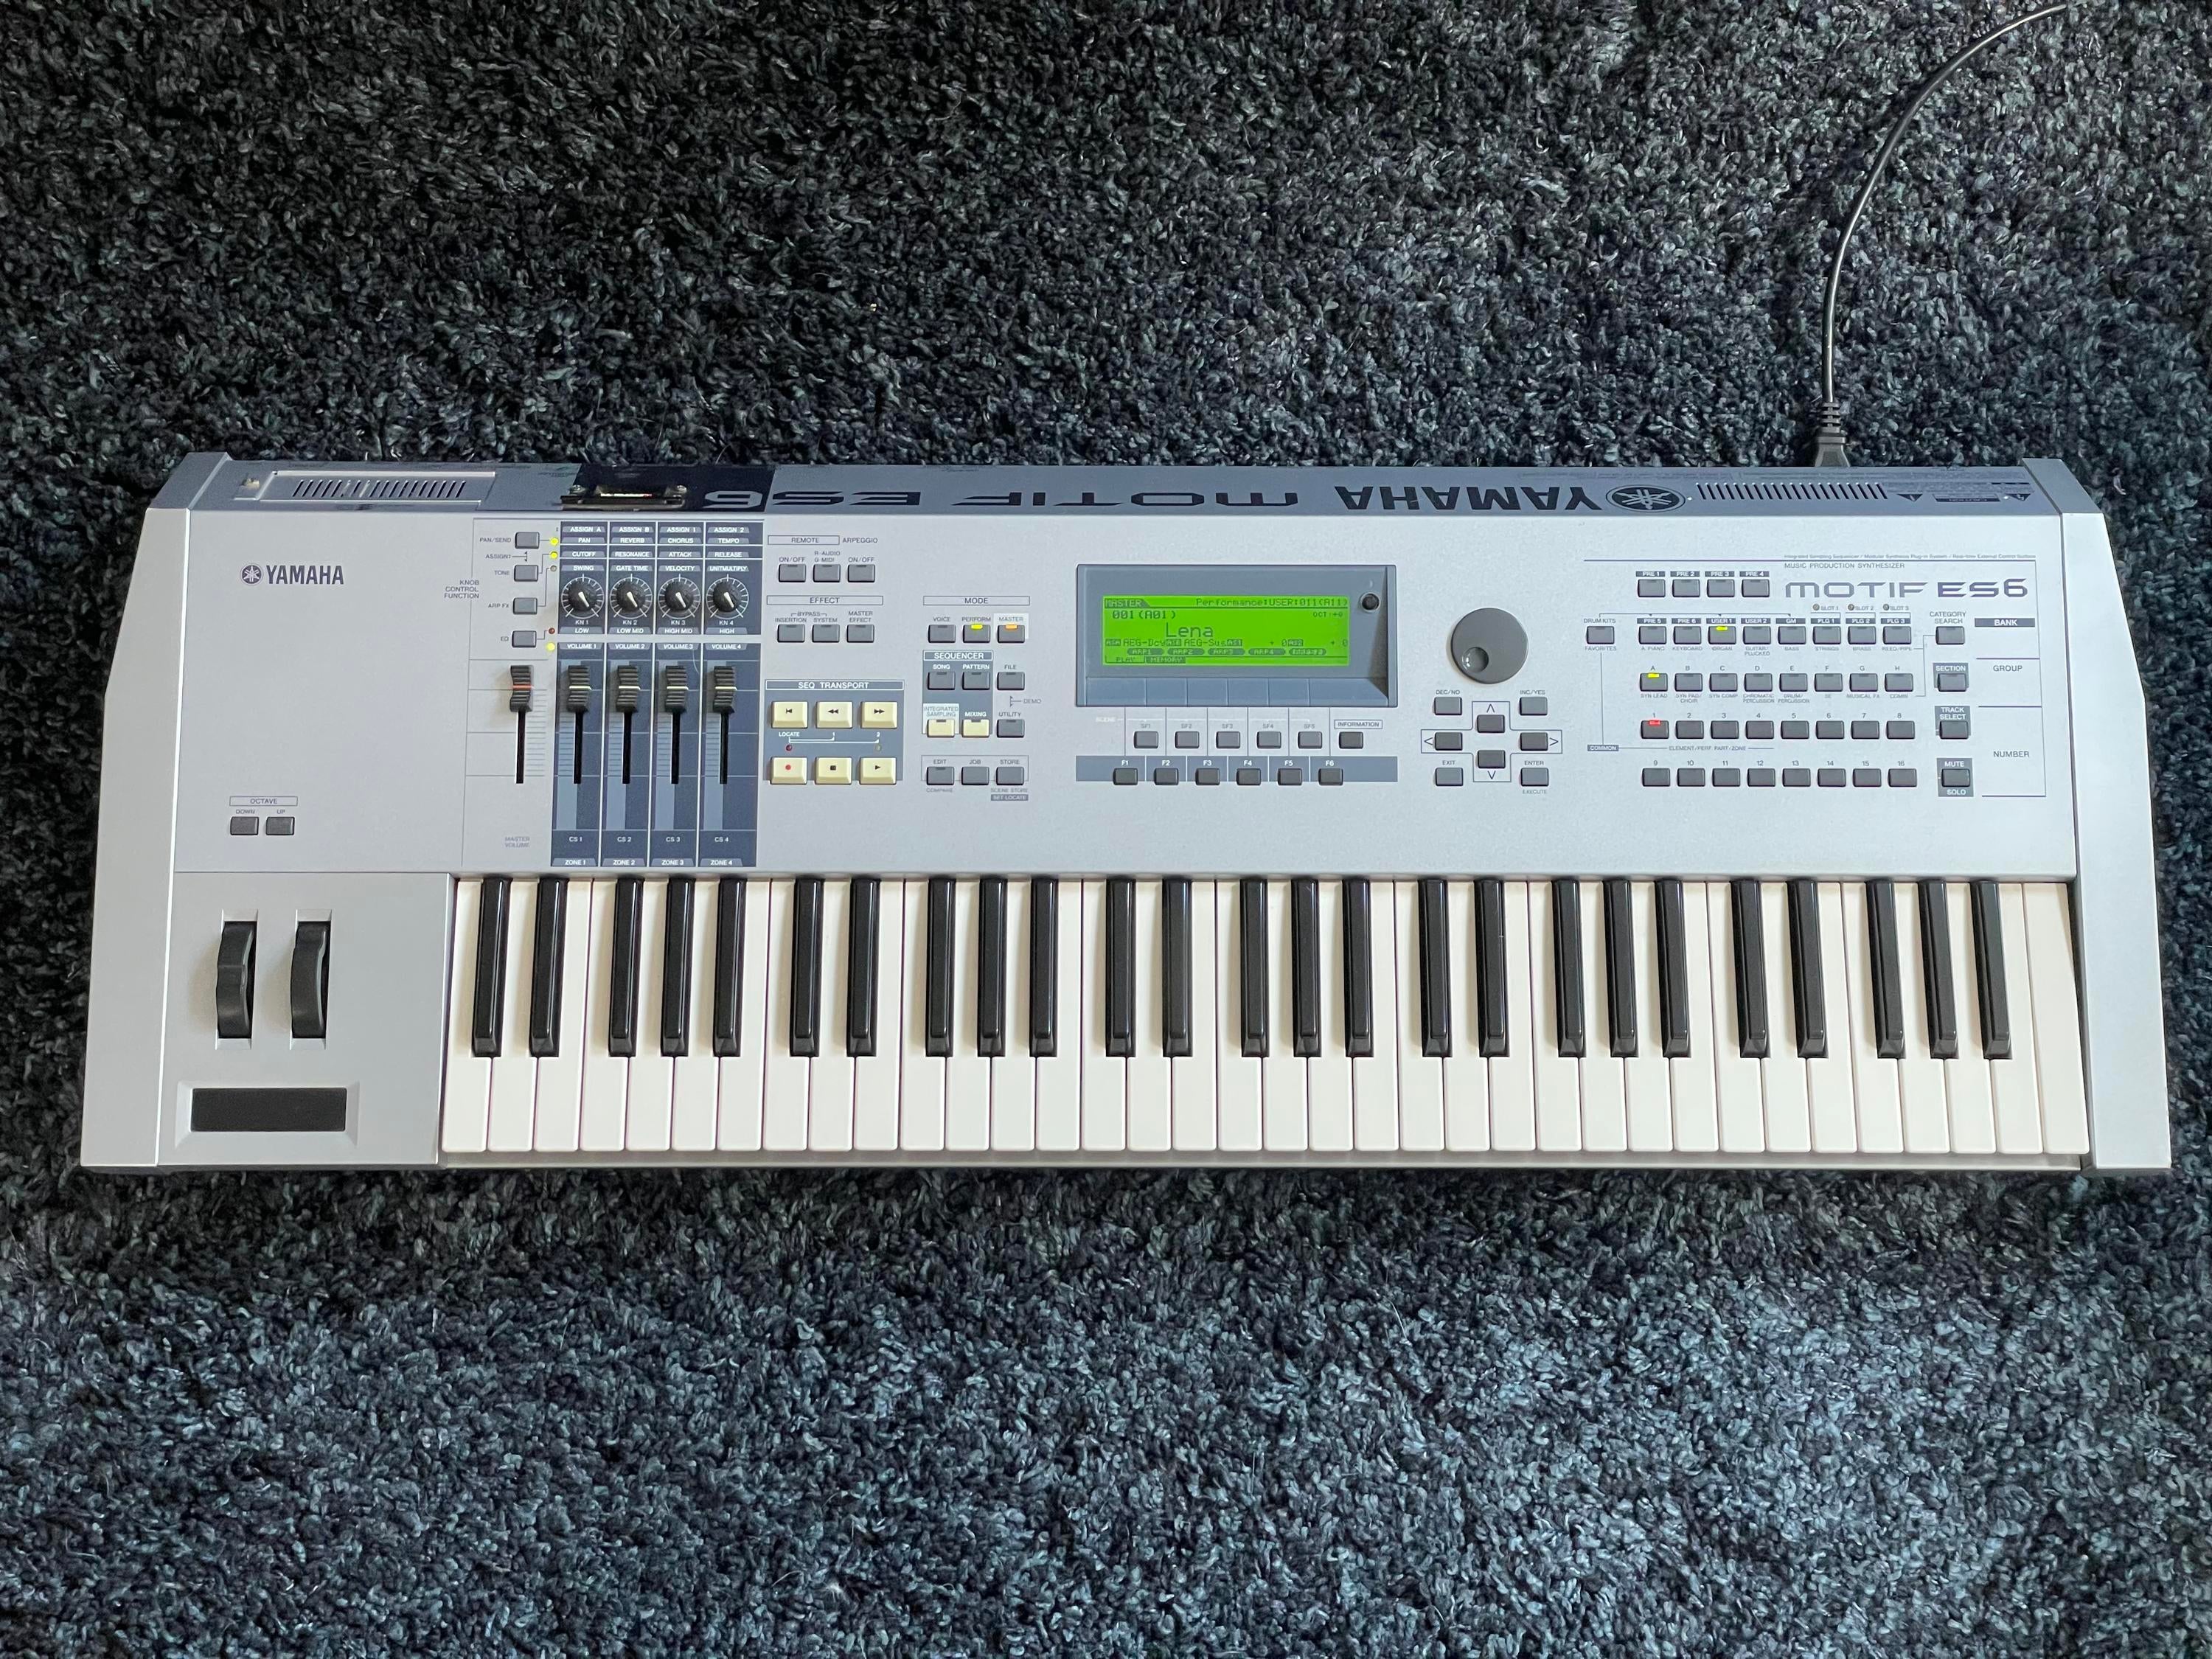 Used Yamaha Motif ES6 Keyboard